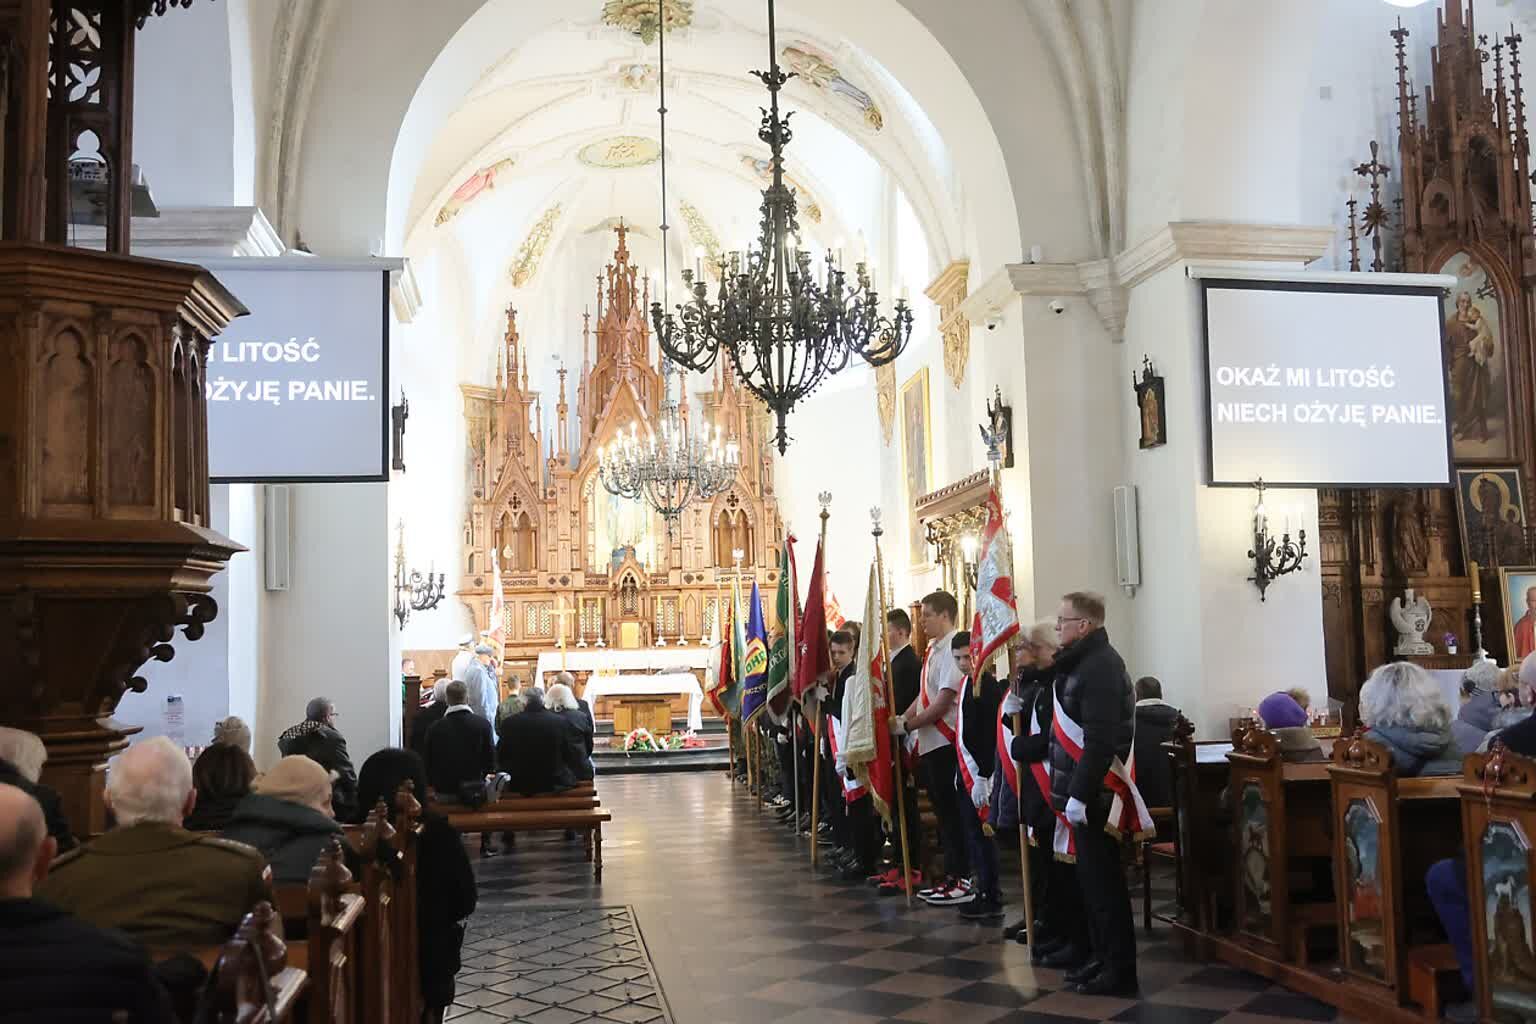 Wnętrze kościoła podczas uroczystości, z widocznymi chorągiewkami, zgromadzonymi ludźmi i ozdobnym ołtarzem w tle.